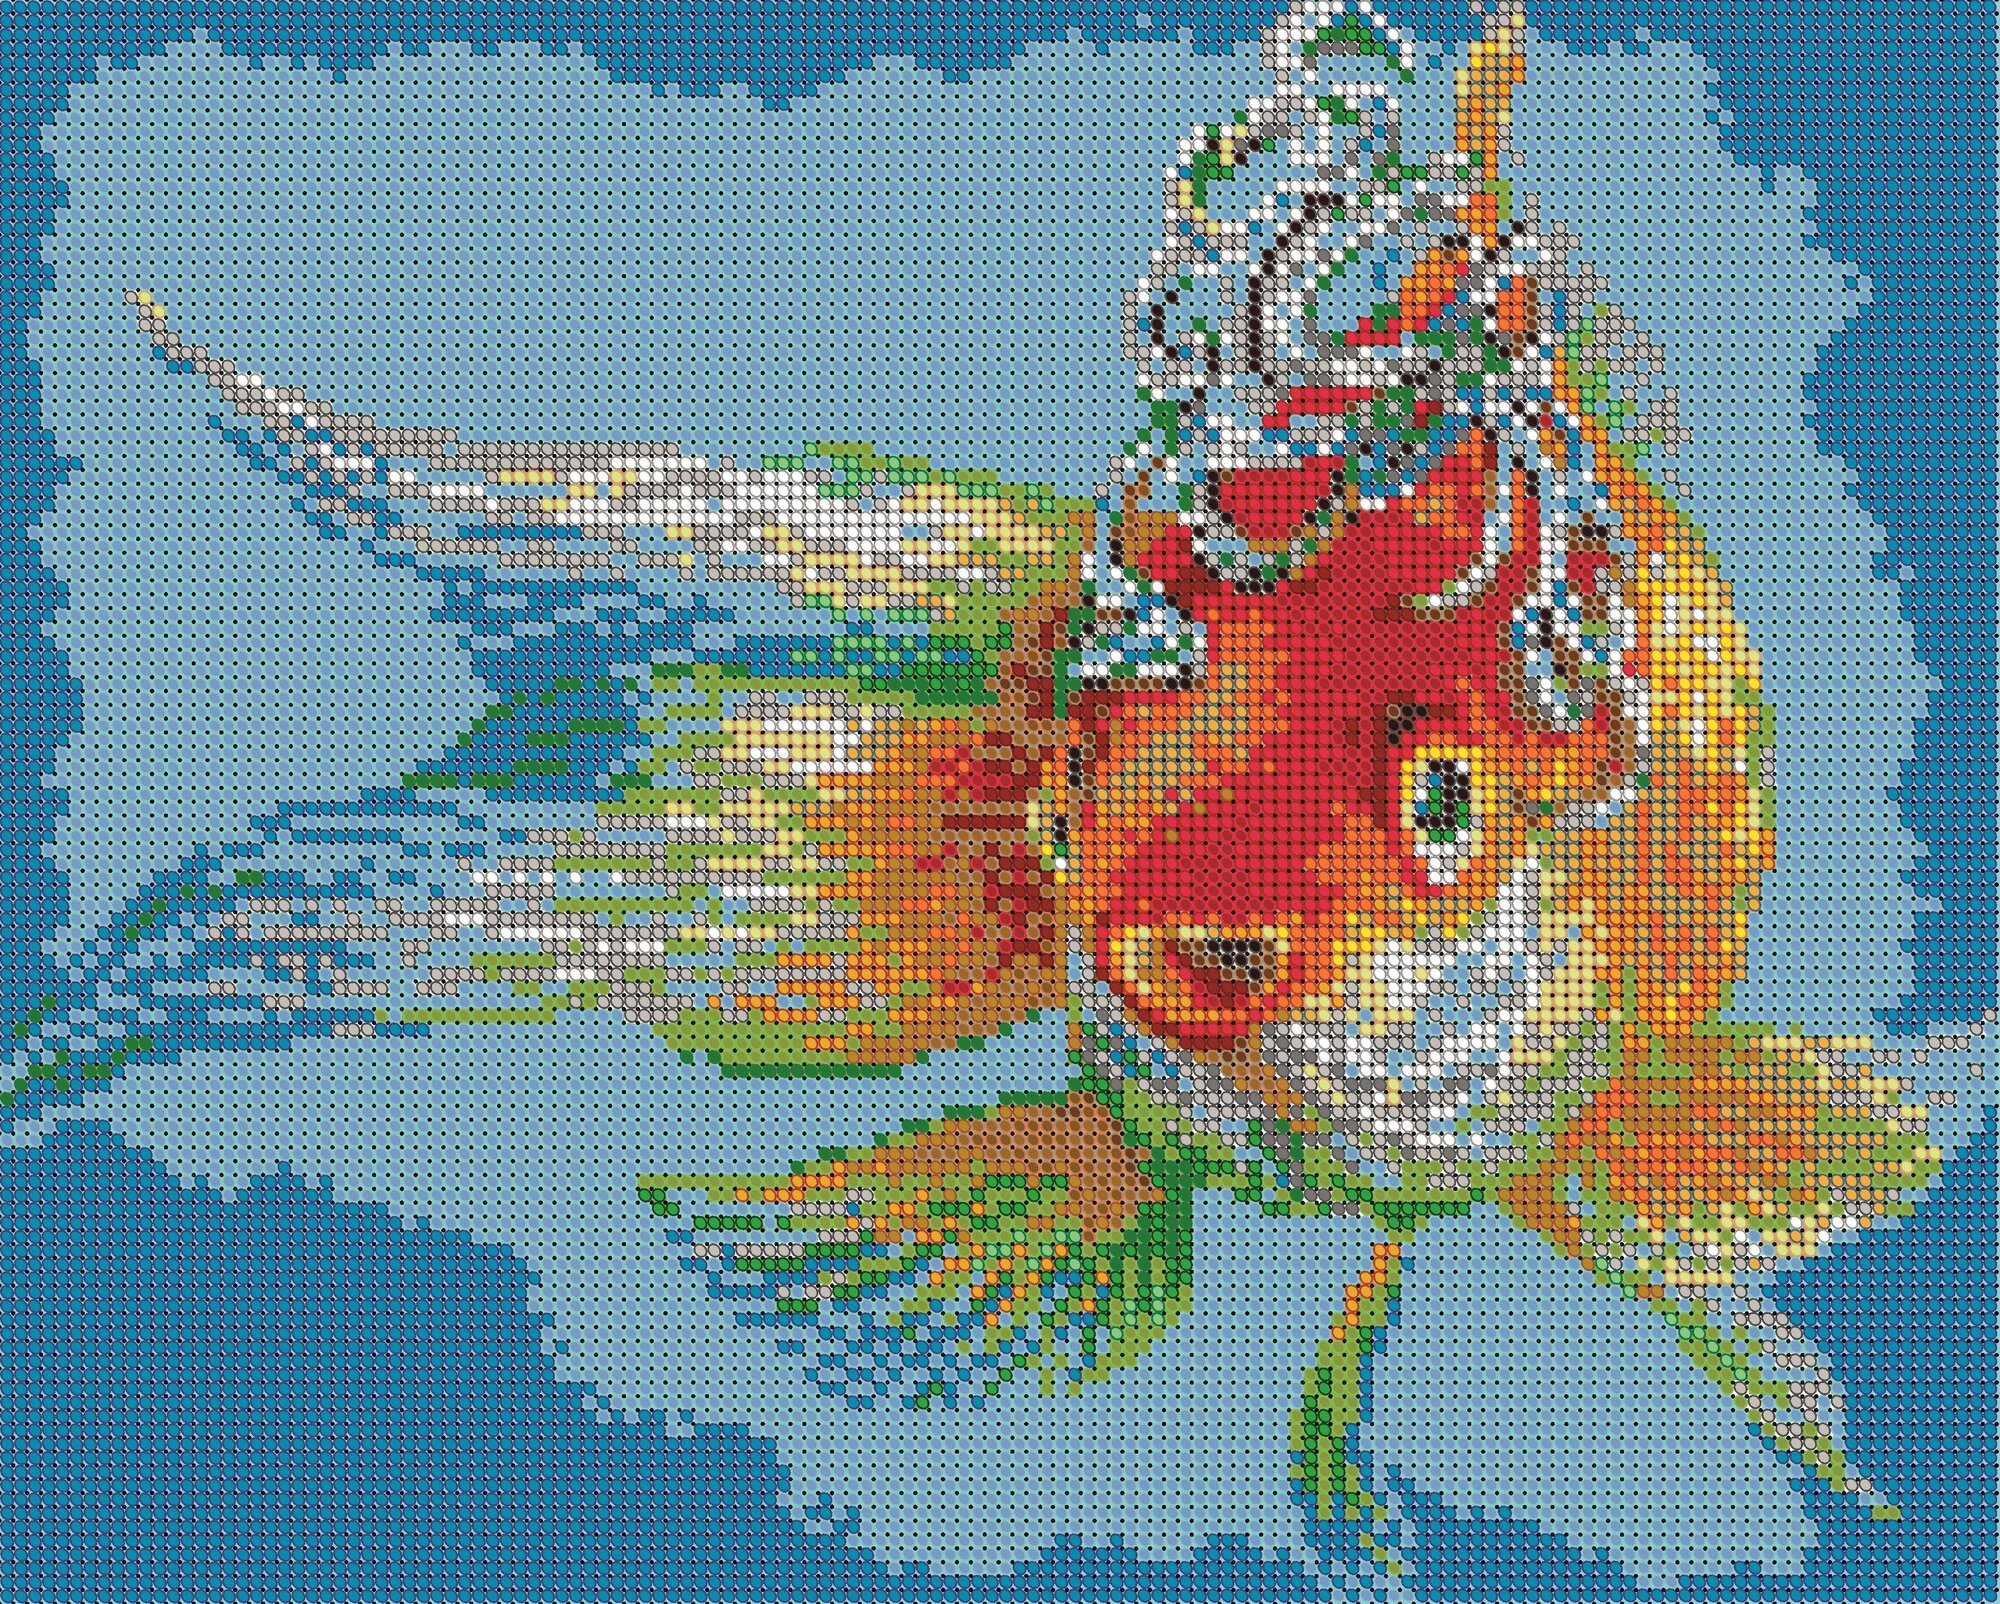 Вышивка бисером картины Золотая рыбка 24*30см